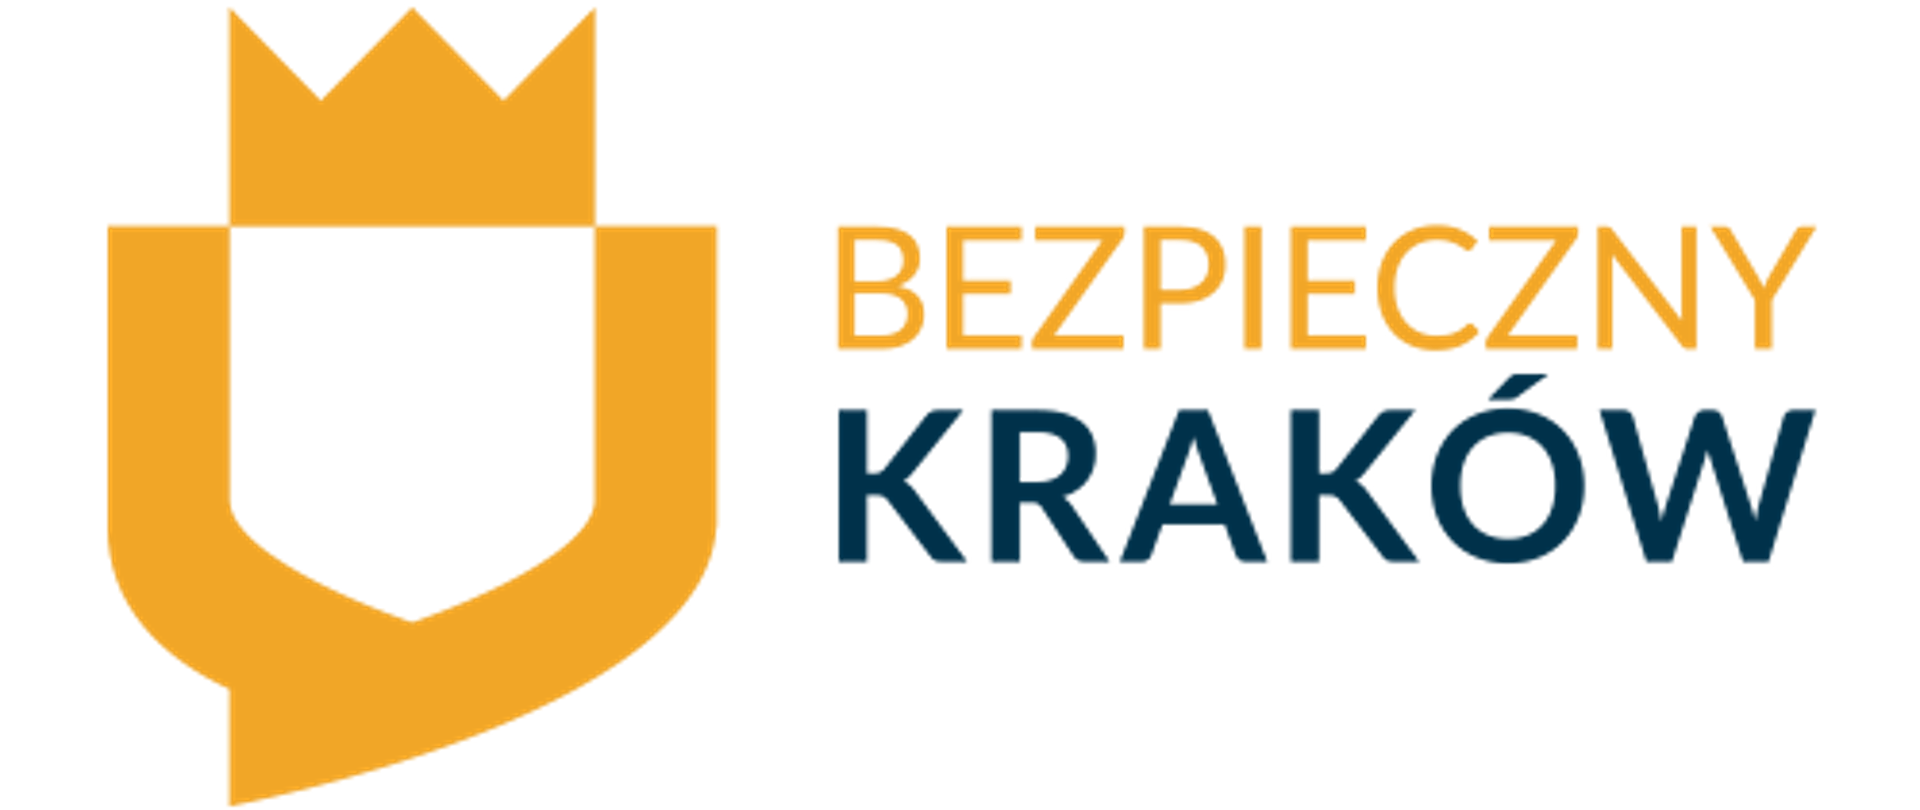 Program "Bezpieczny Kraków" - Pomarańczowa kropka